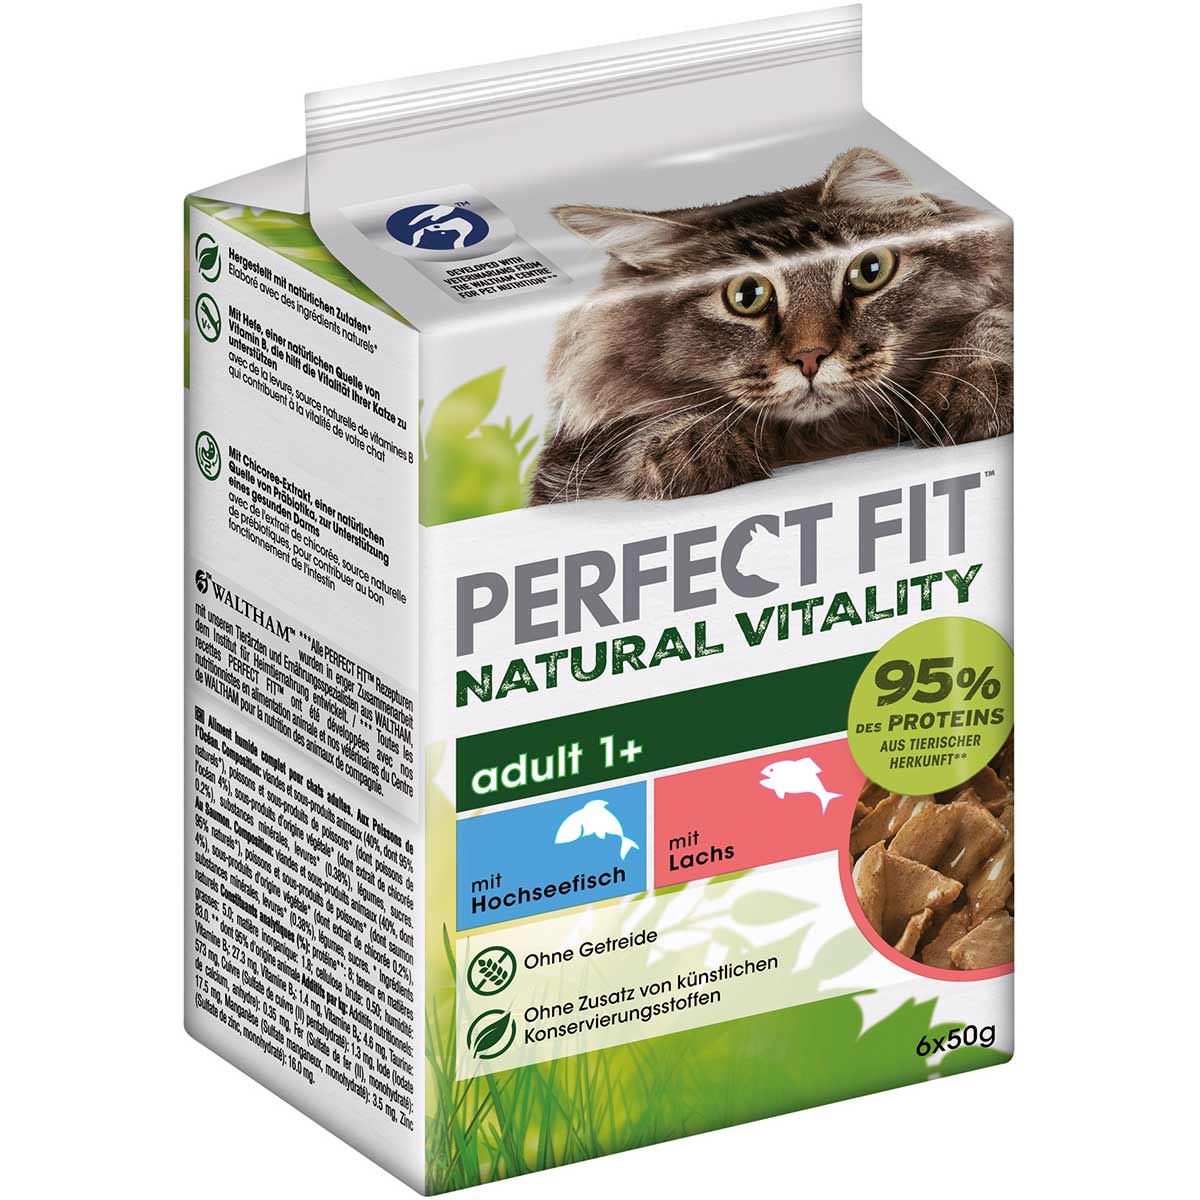 PERFECT FIT Katze Natural Vitality Adult 1+ mit Hochseefisch und Lachs 6x50g